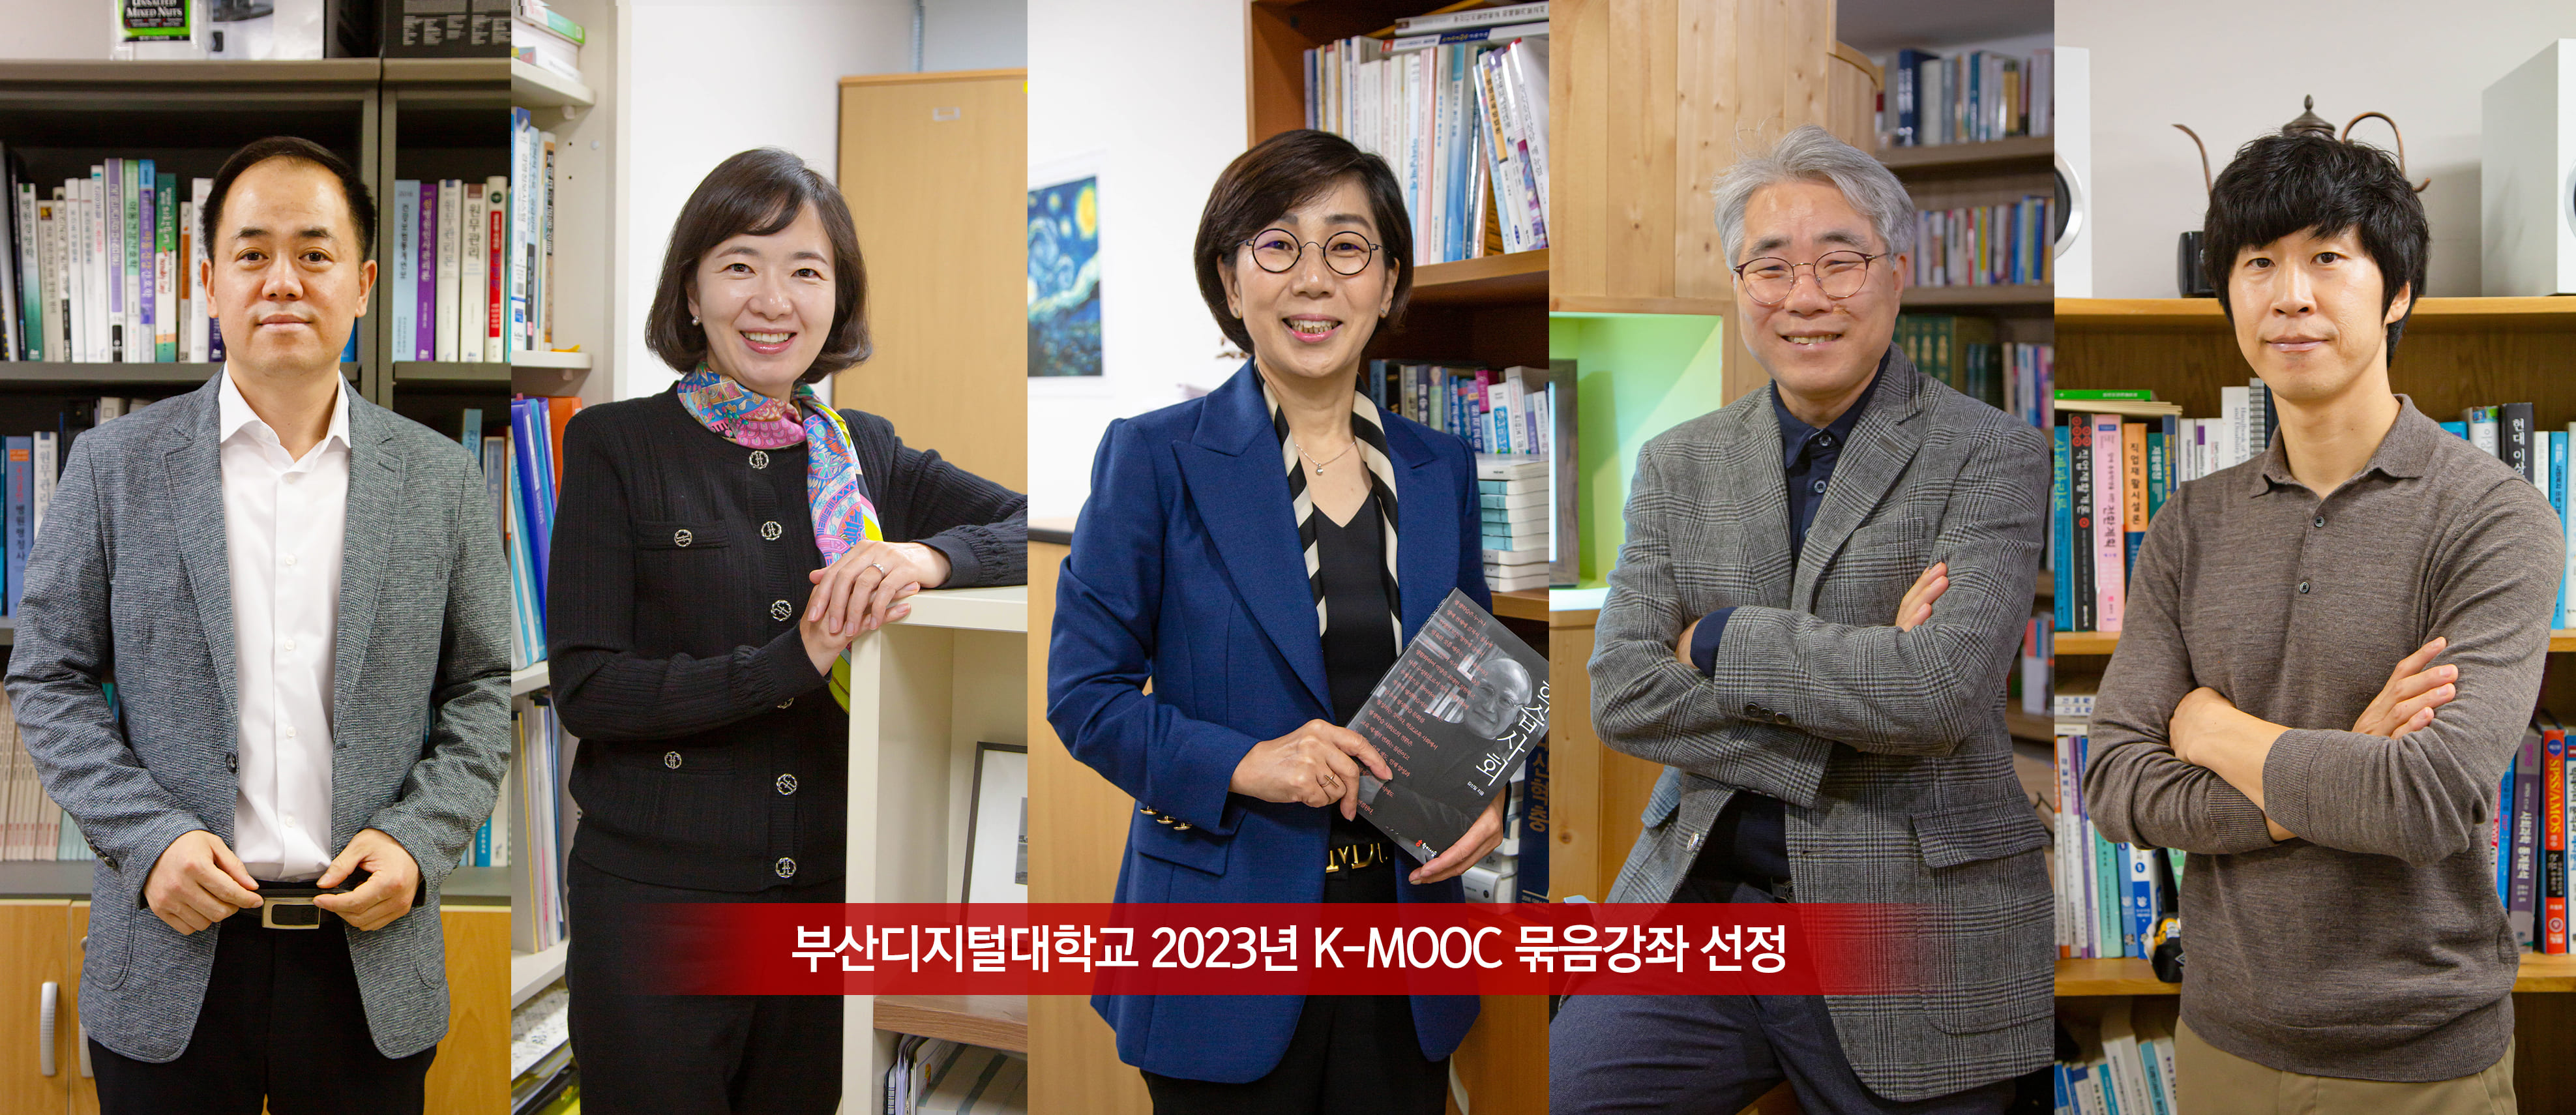 부산디지털대학교 2023년 K-MOOC 묶음강좌 선정